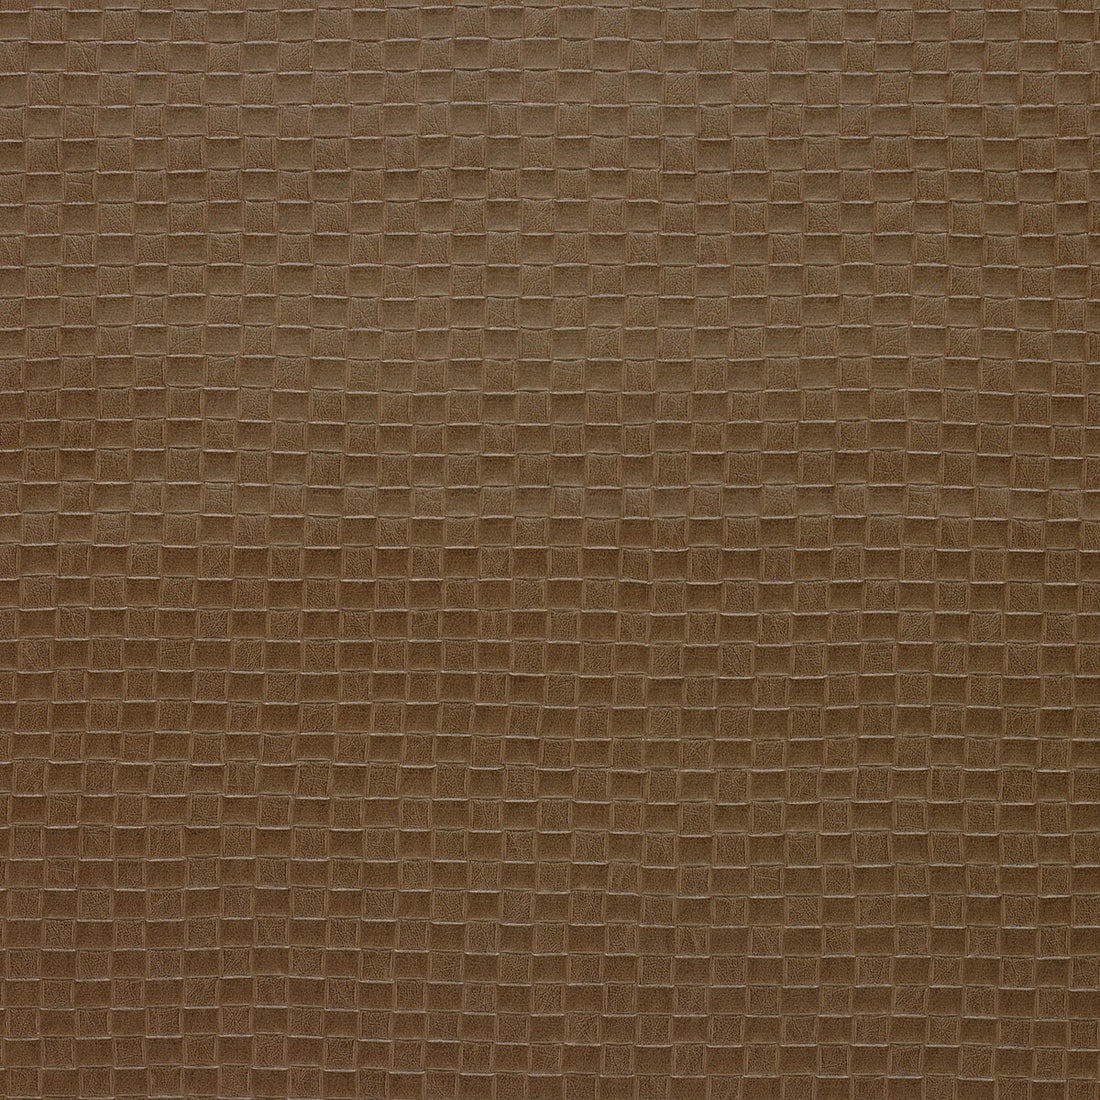 Kravet Design fabric in olia-1616 color - pattern OLIA.1616.0 - by Kravet Design